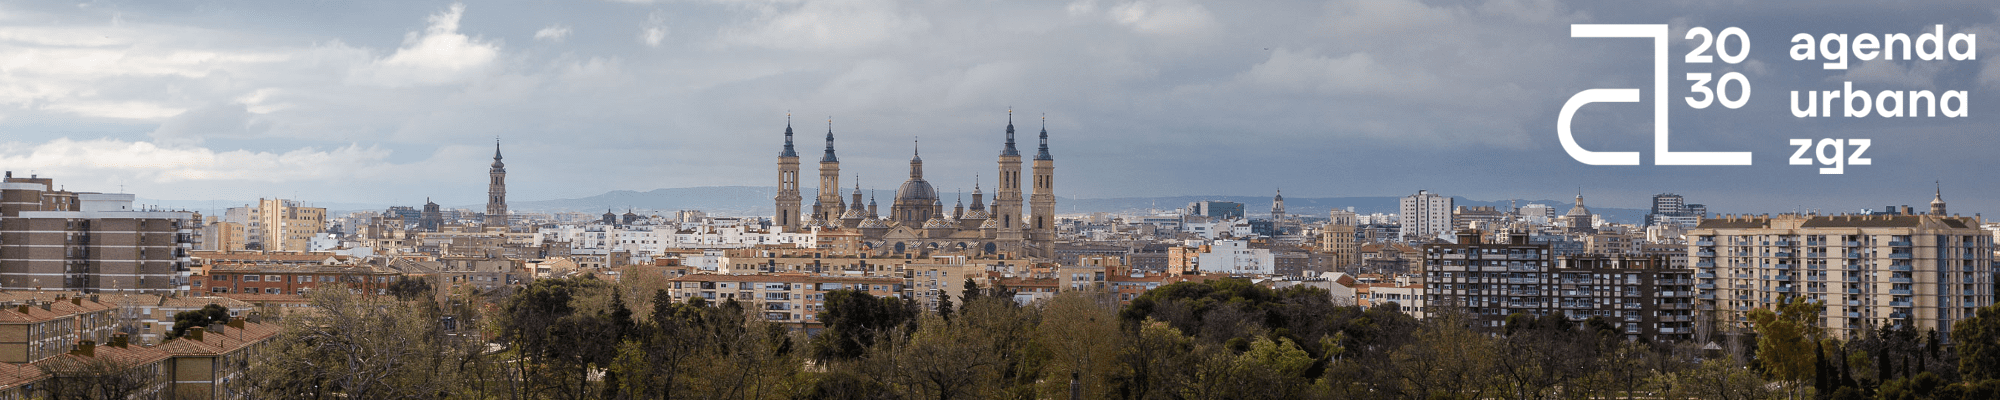 Agenda Urbana de Zaragoza